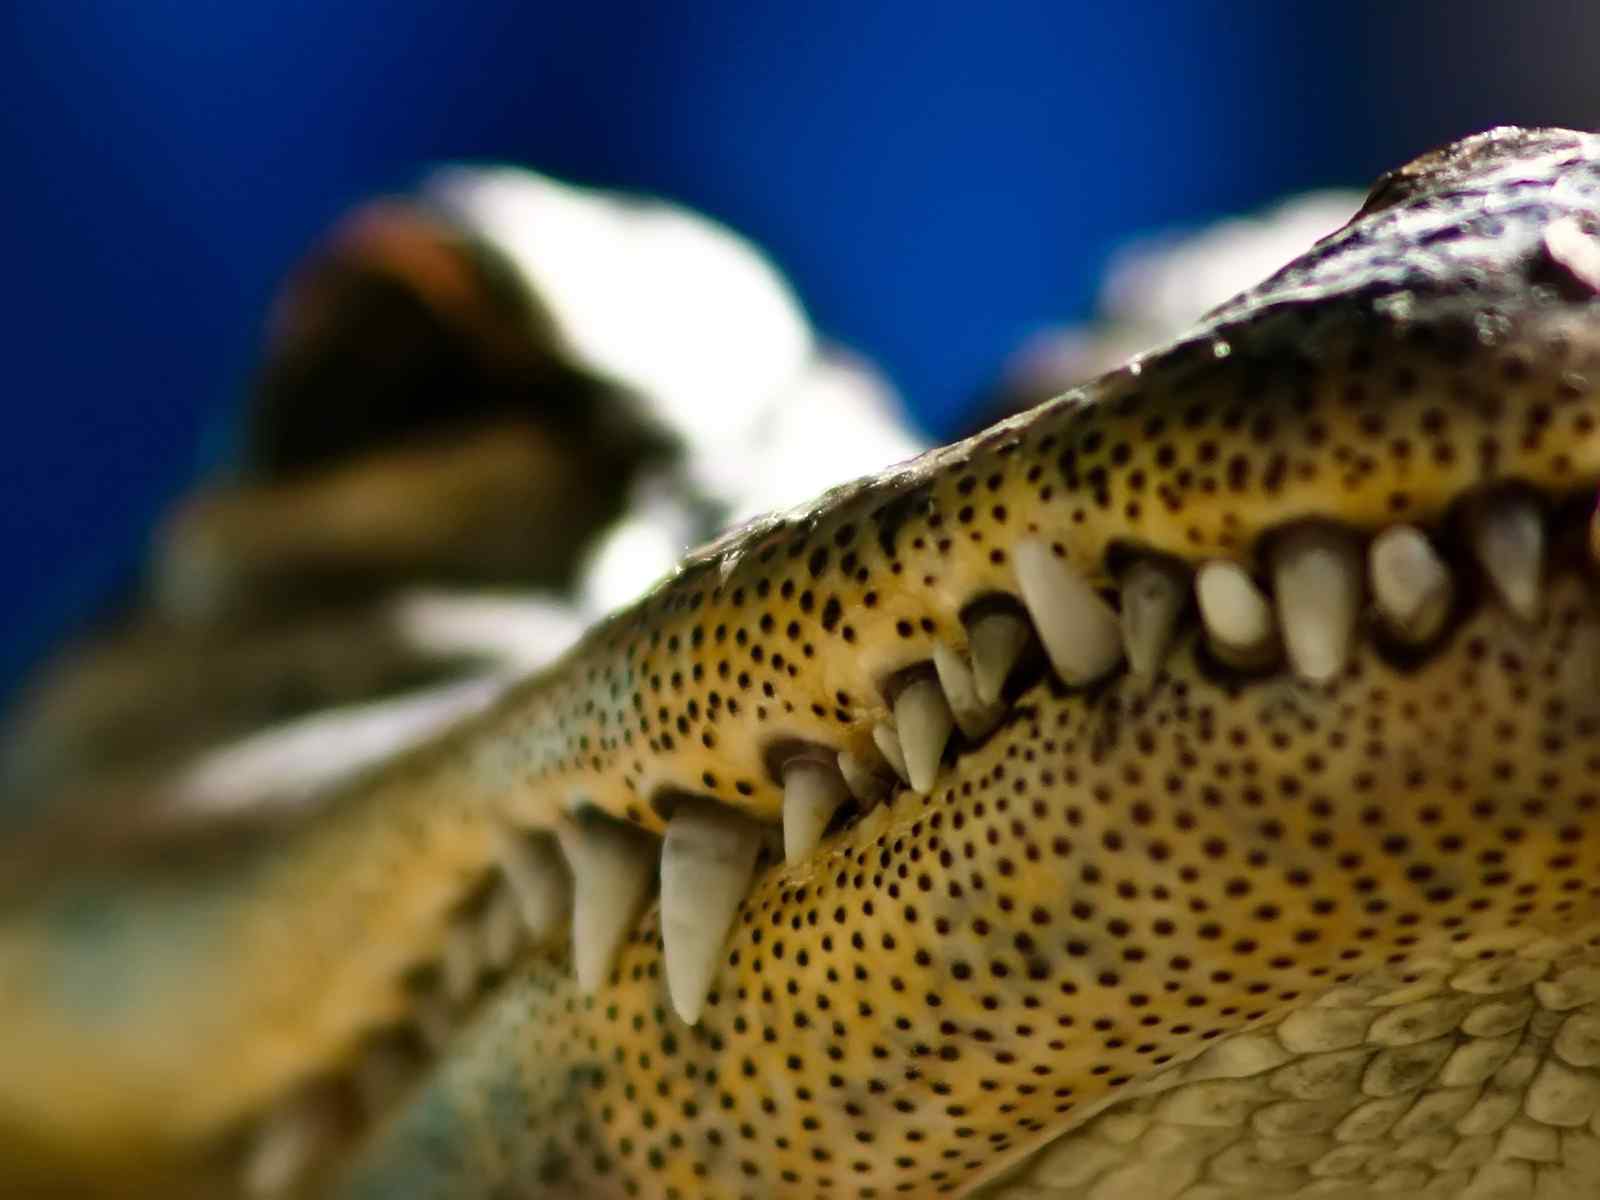 鳄鱼 动物园 嘴 - Pixabay上的免费照片 - Pixabay